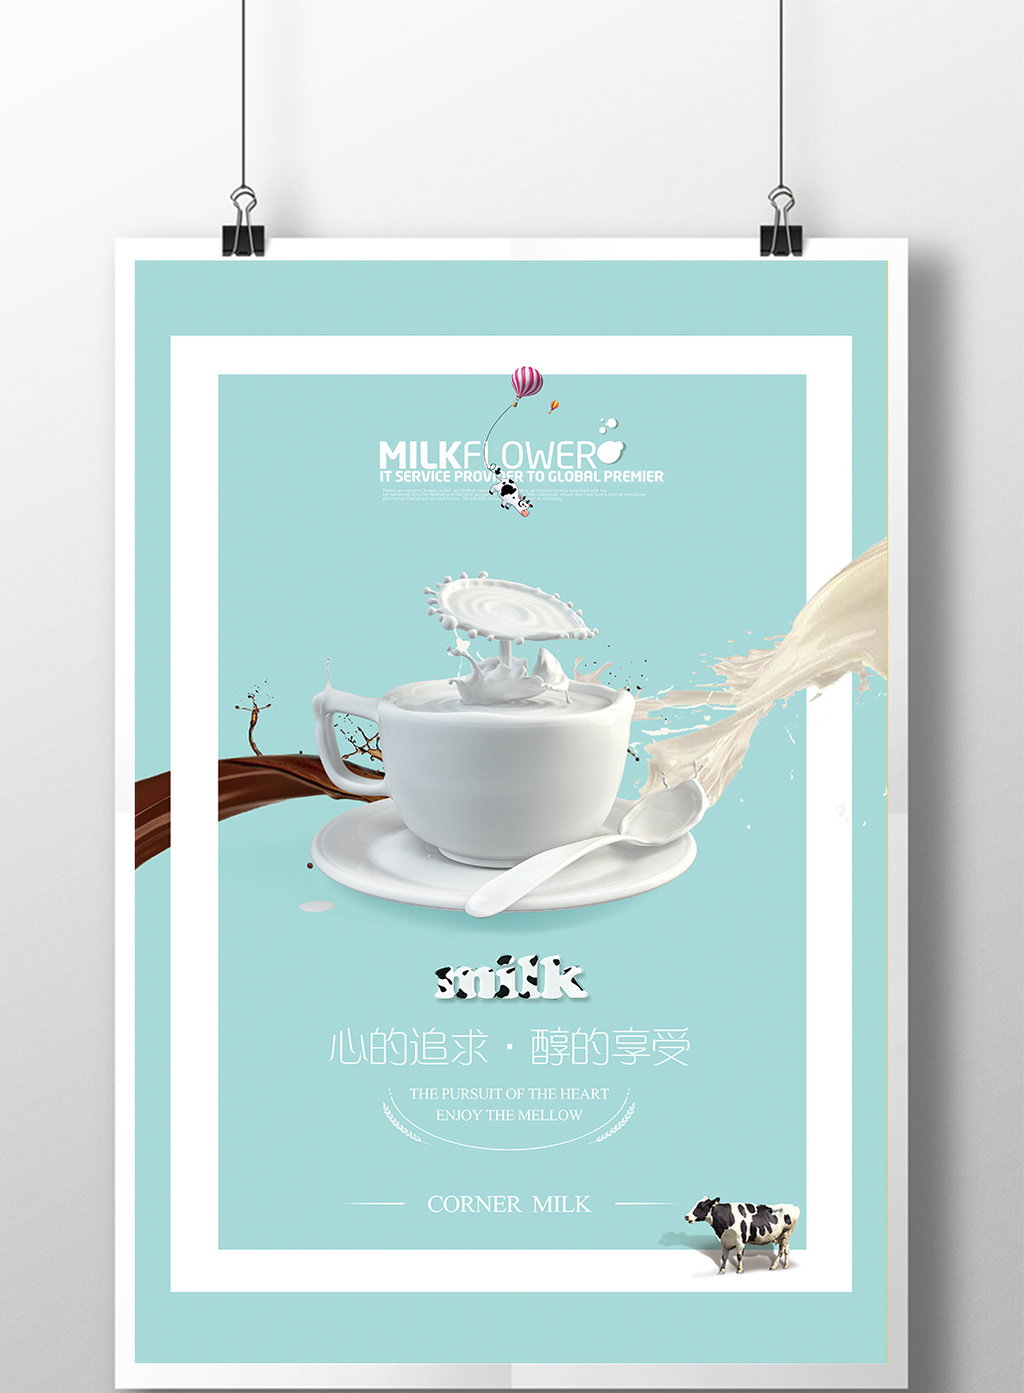 创意简约时尚牛奶宣传海报模板下载_3543x5315像素